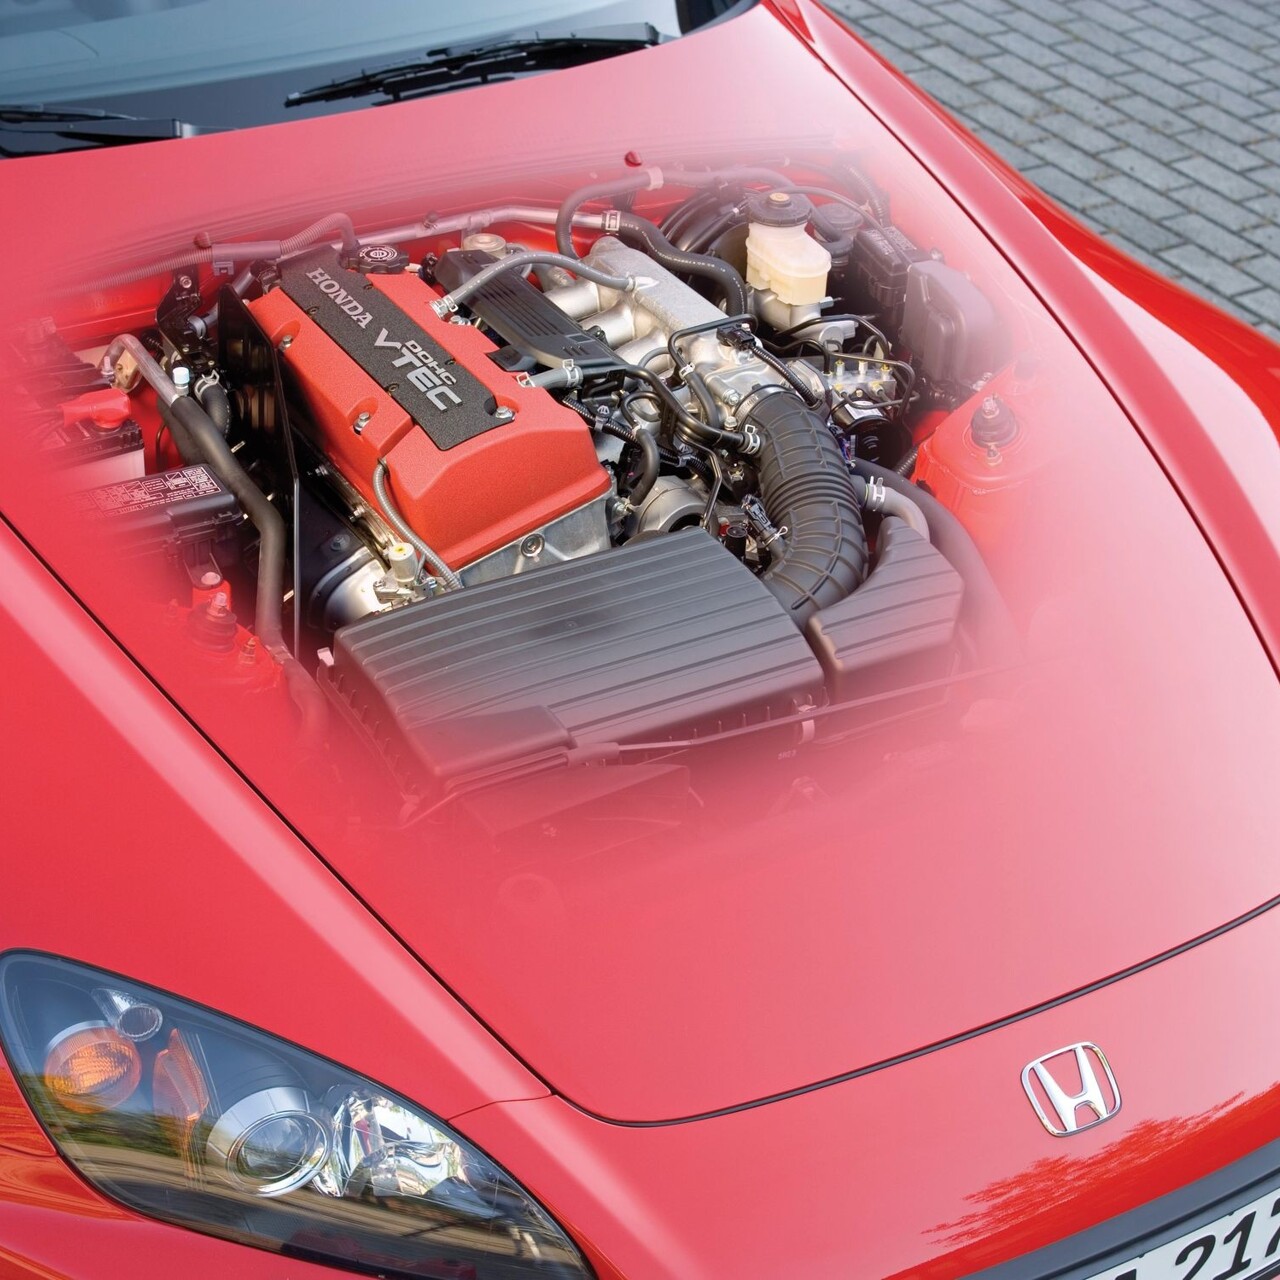 Технические особенности: что делает двигатель GTA уникальным?